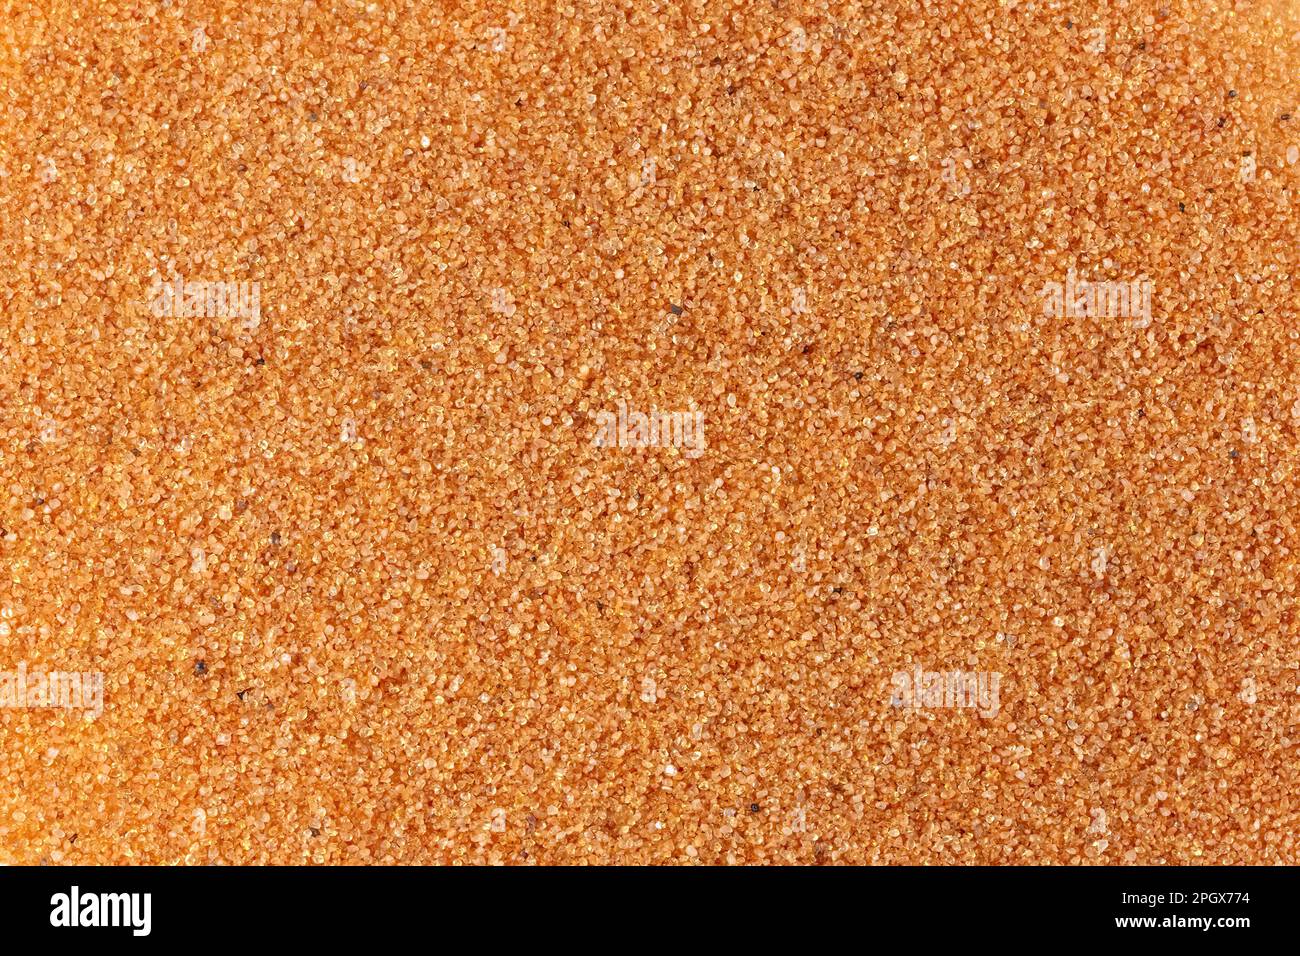 Quarzsand aus Navajo Sandstone, Kane County, Utah. Navajo Sandstein stammt aus der Juassic-Zeit, Hämatit überzieht den Quarz und verleiht ihm eine Sandfarbe. Stockfoto